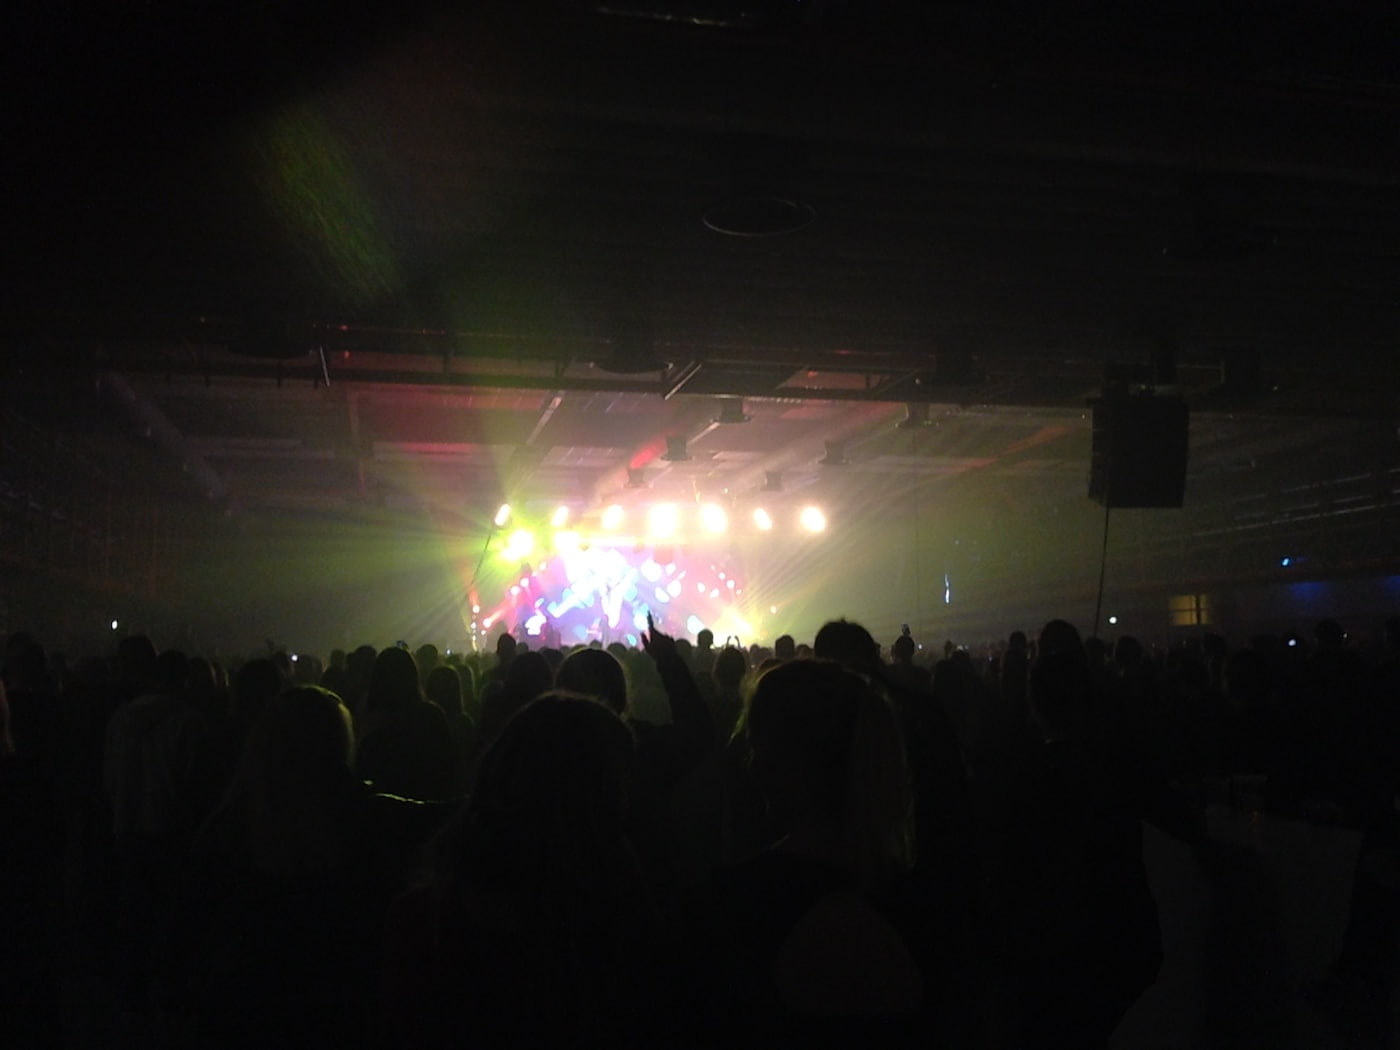 crowd ellie goulding concert copenhagen 2014